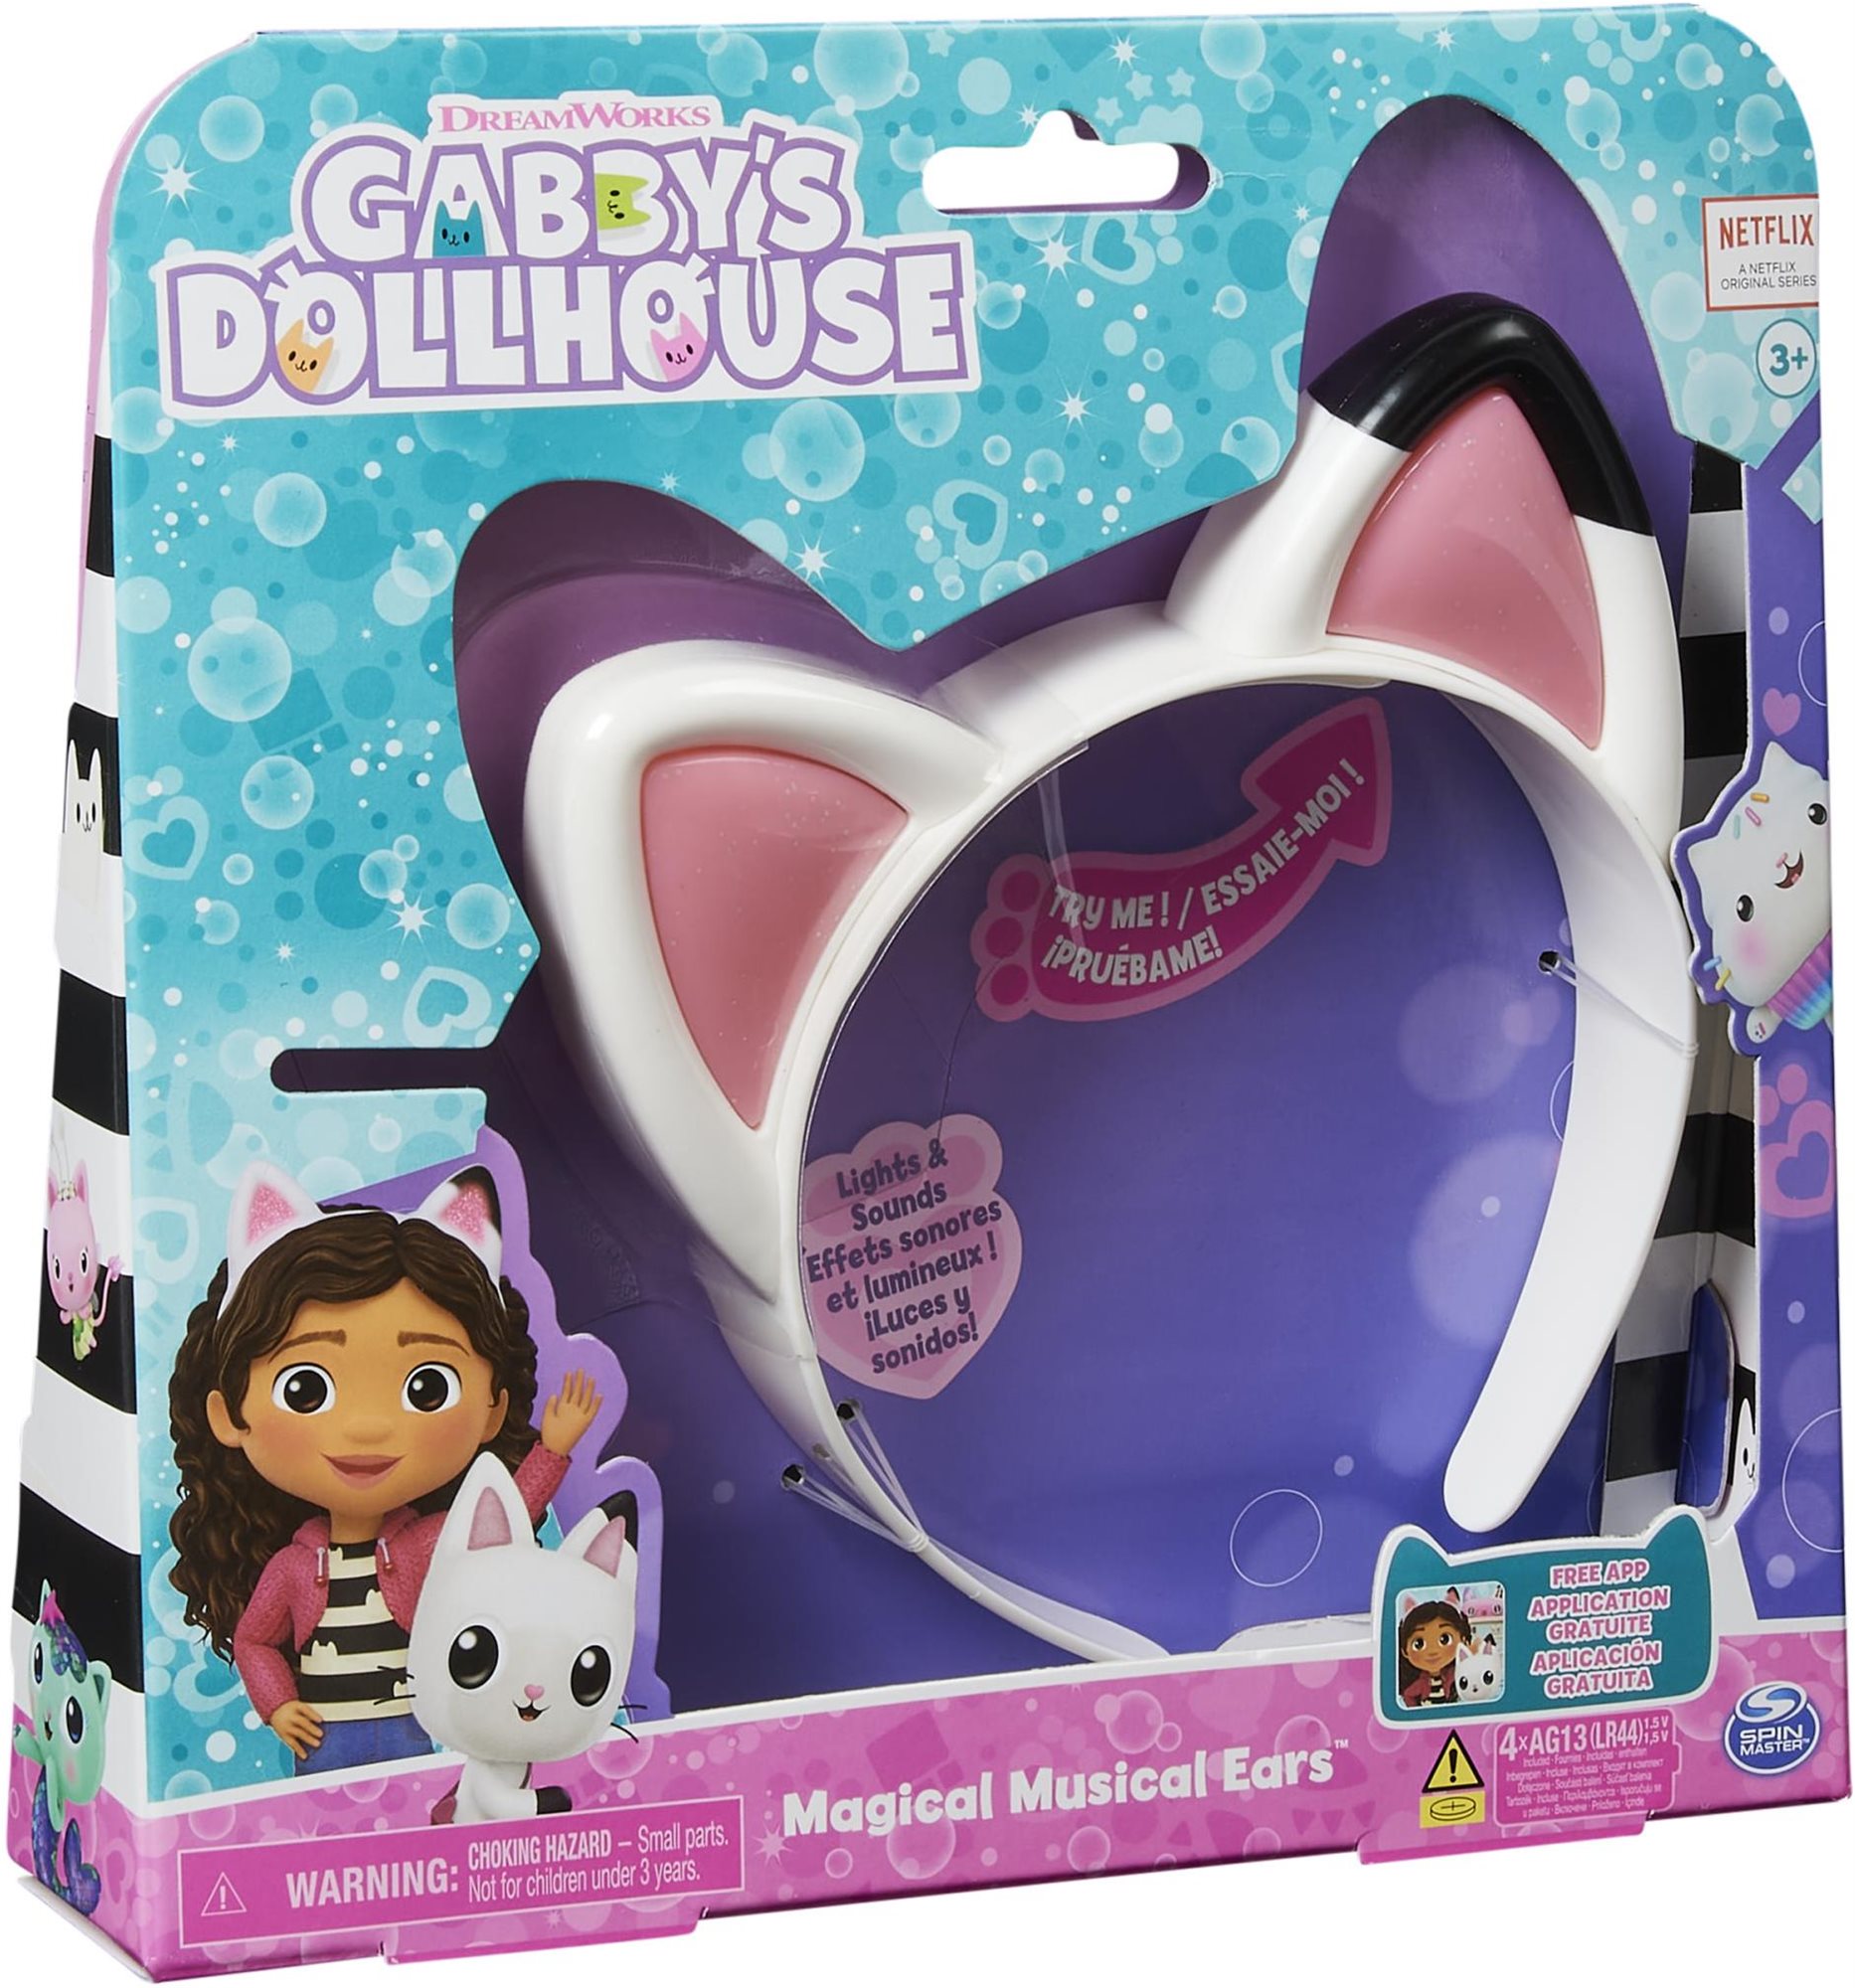 Gabby babaháza Dollhouse játszó macskafülek